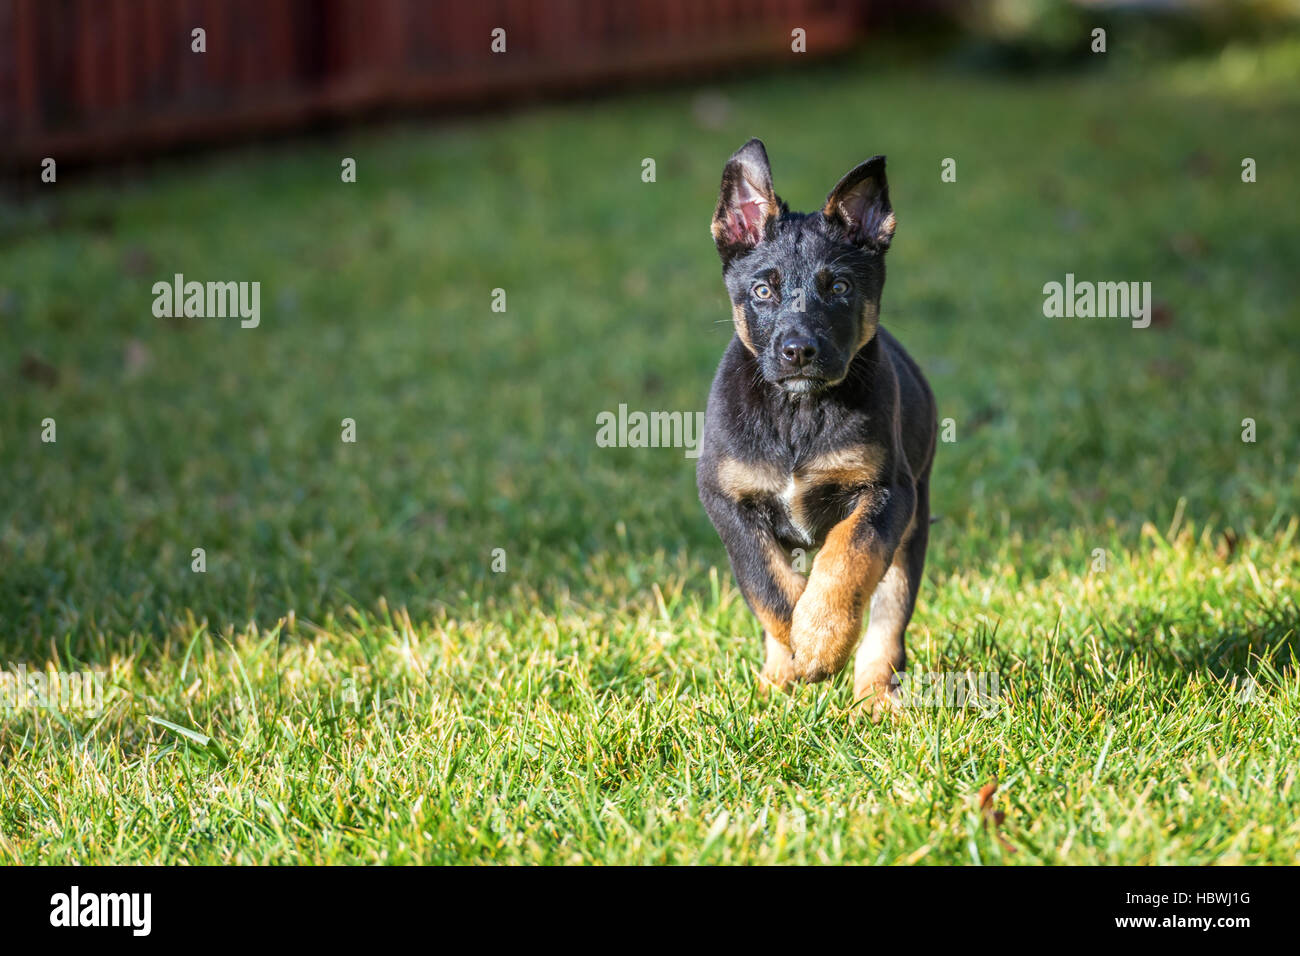 Belgian shepherd puppy on green lawn Stock Photo